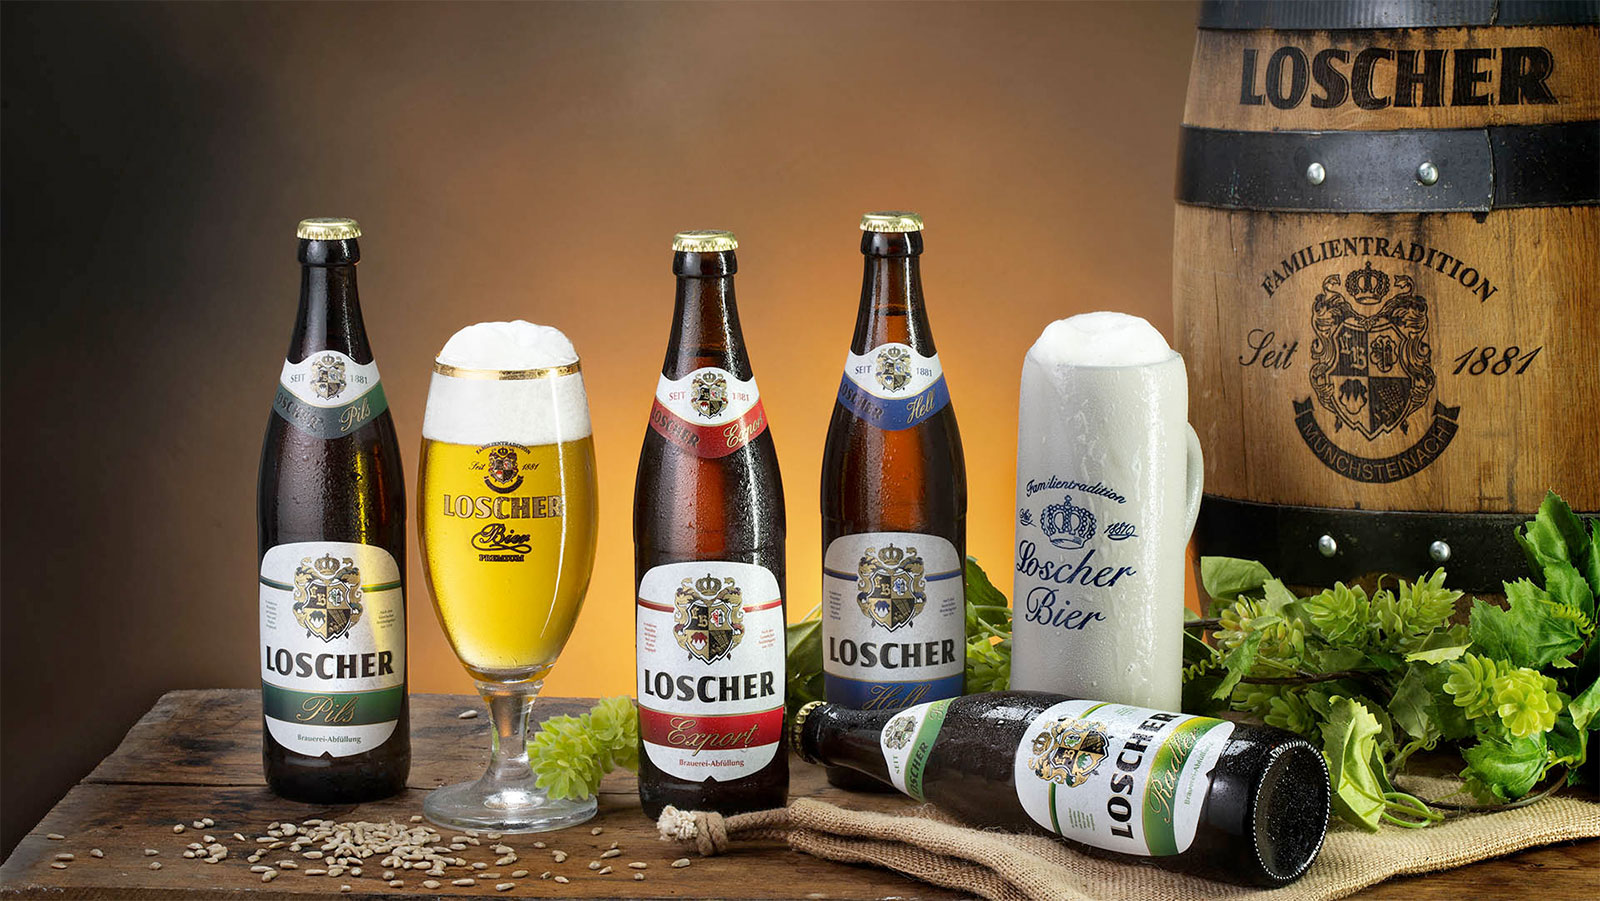 Brauerei Loscher Münchsteinach